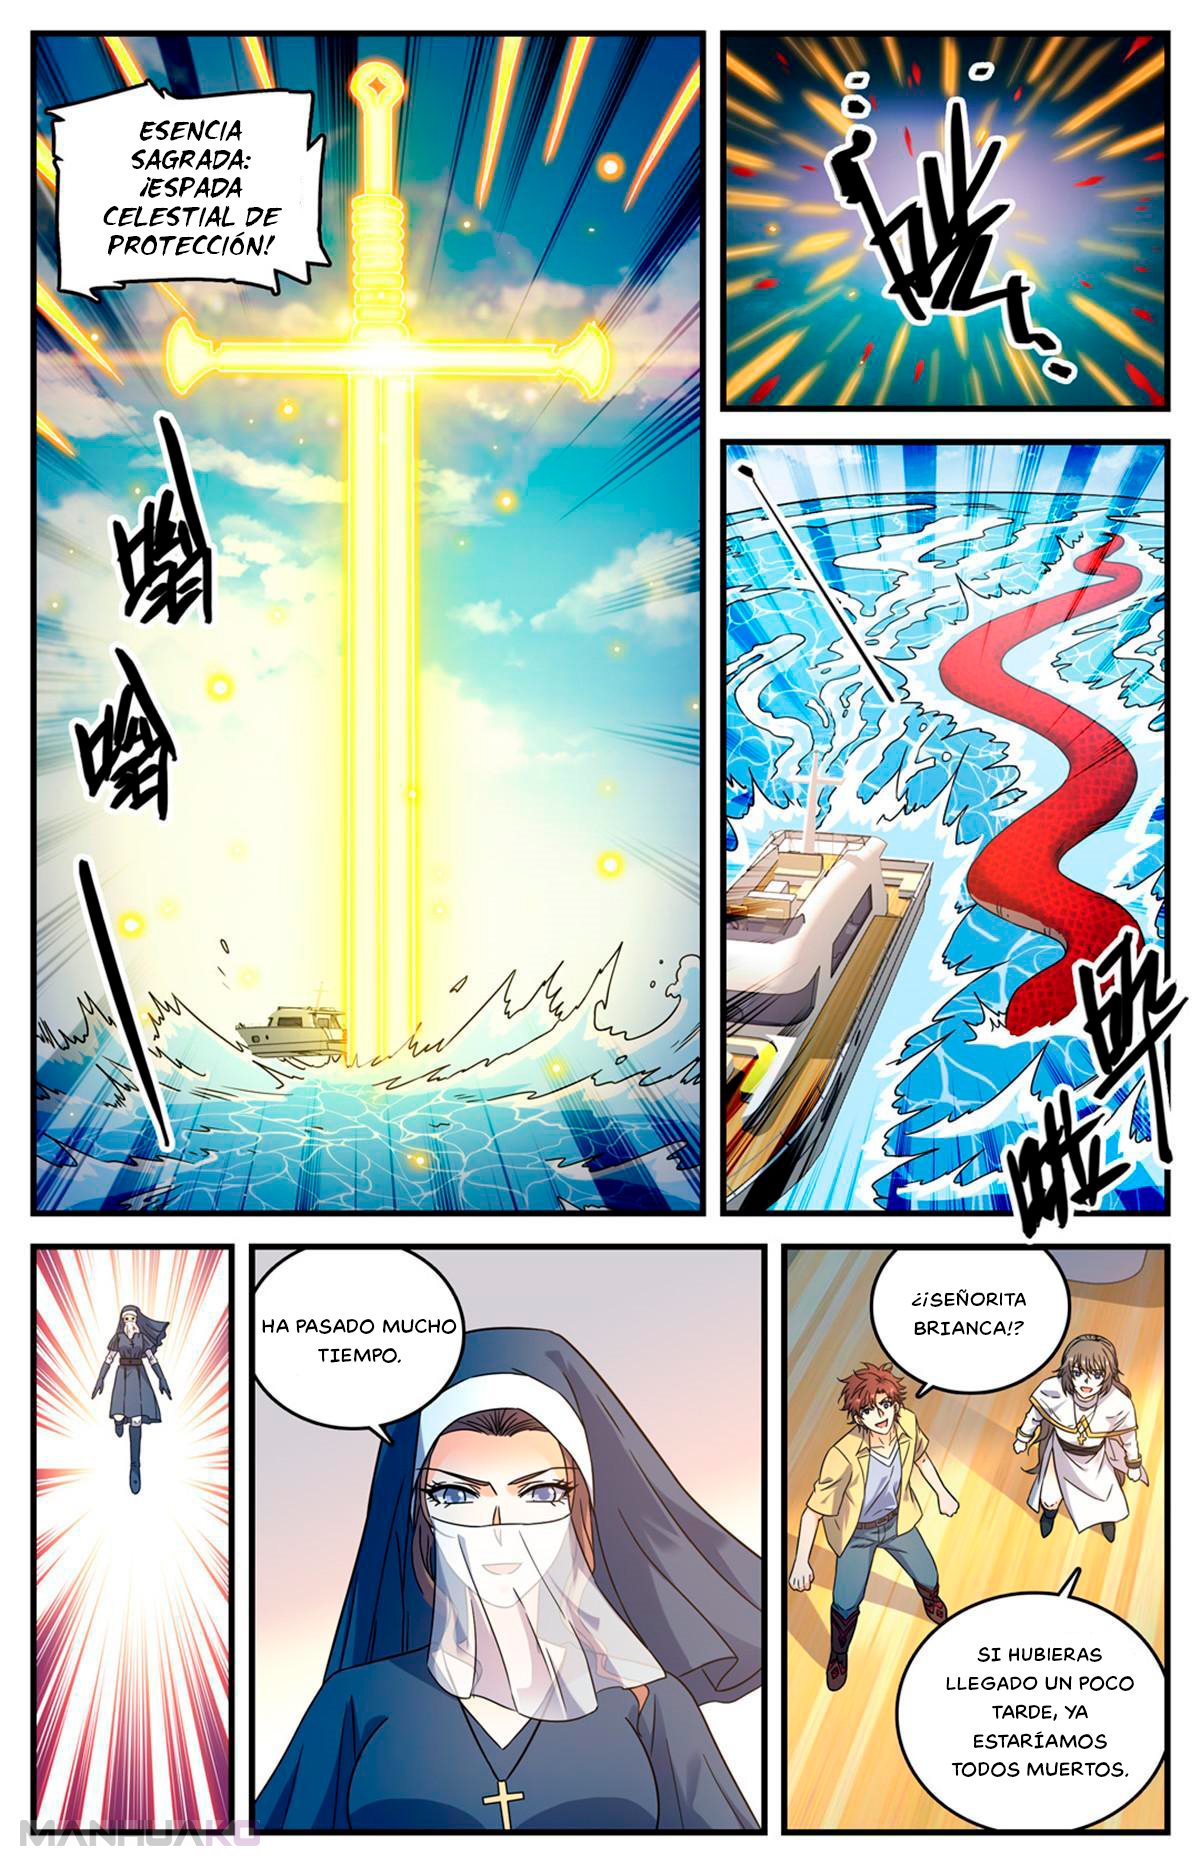 Manga Versatile Mage Chapter 959 image number 12